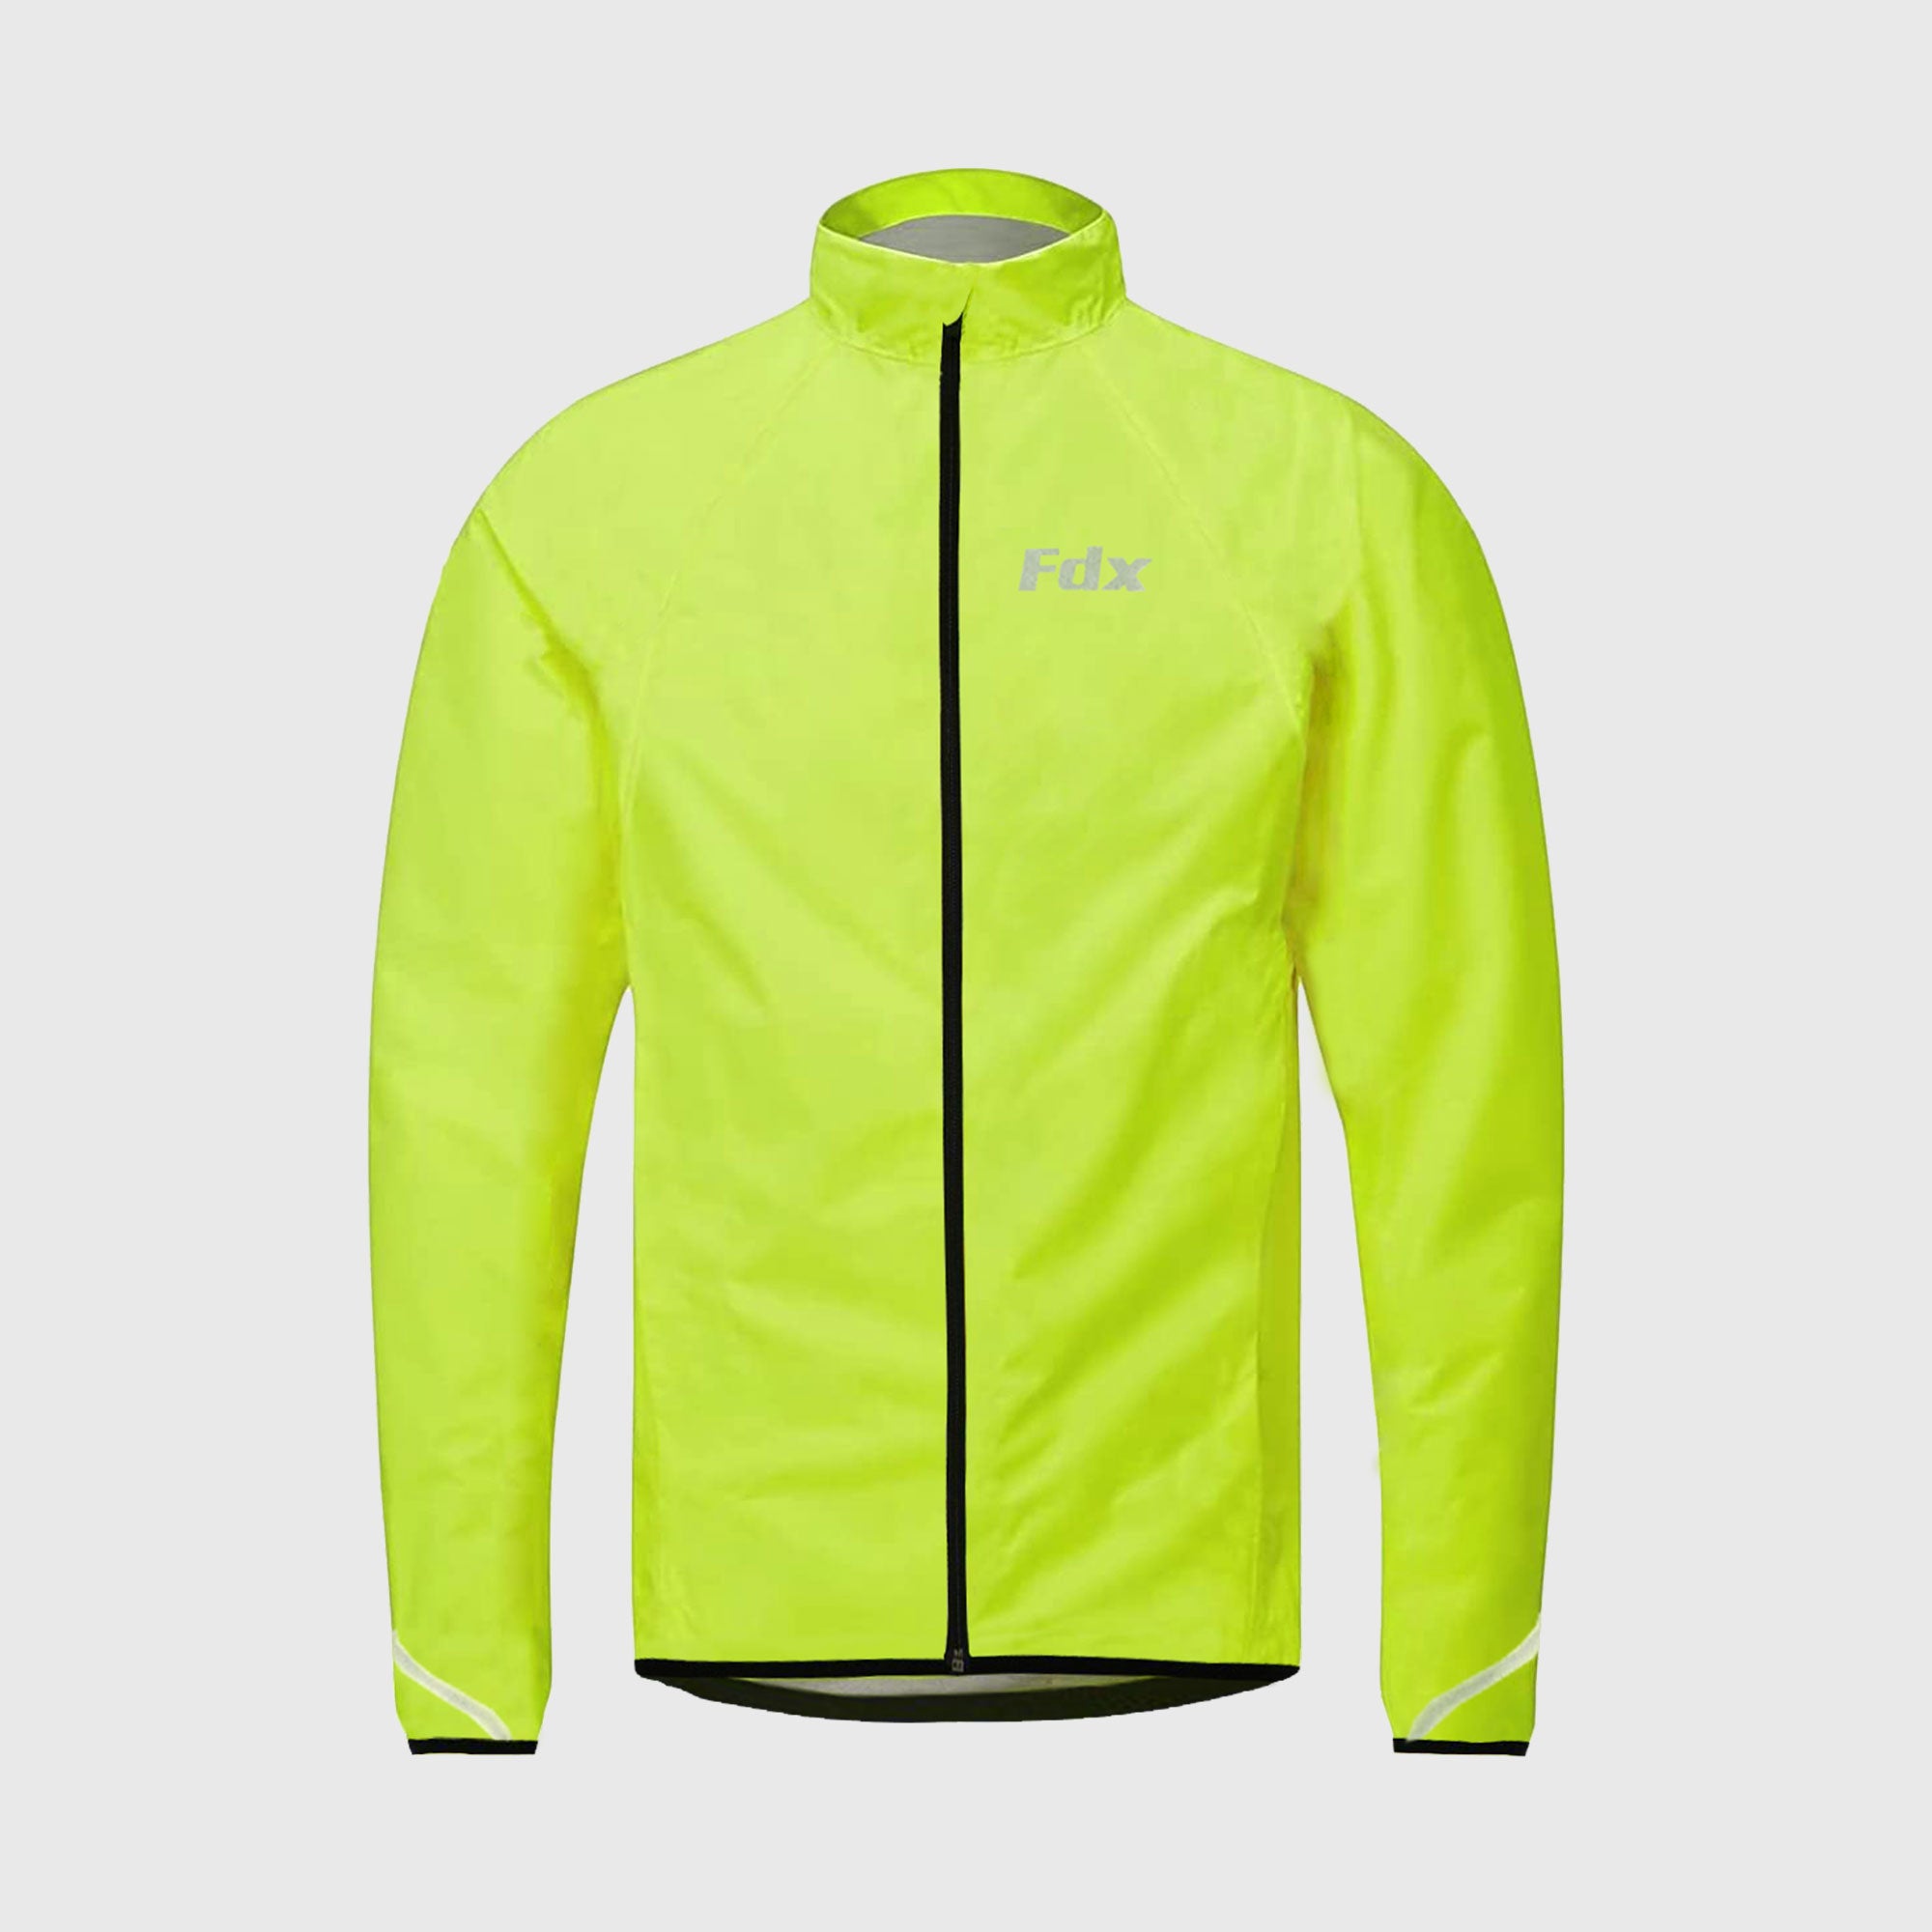 Fdx J20 Yellow Windproof & Waterproof Men's Cycling Jacket